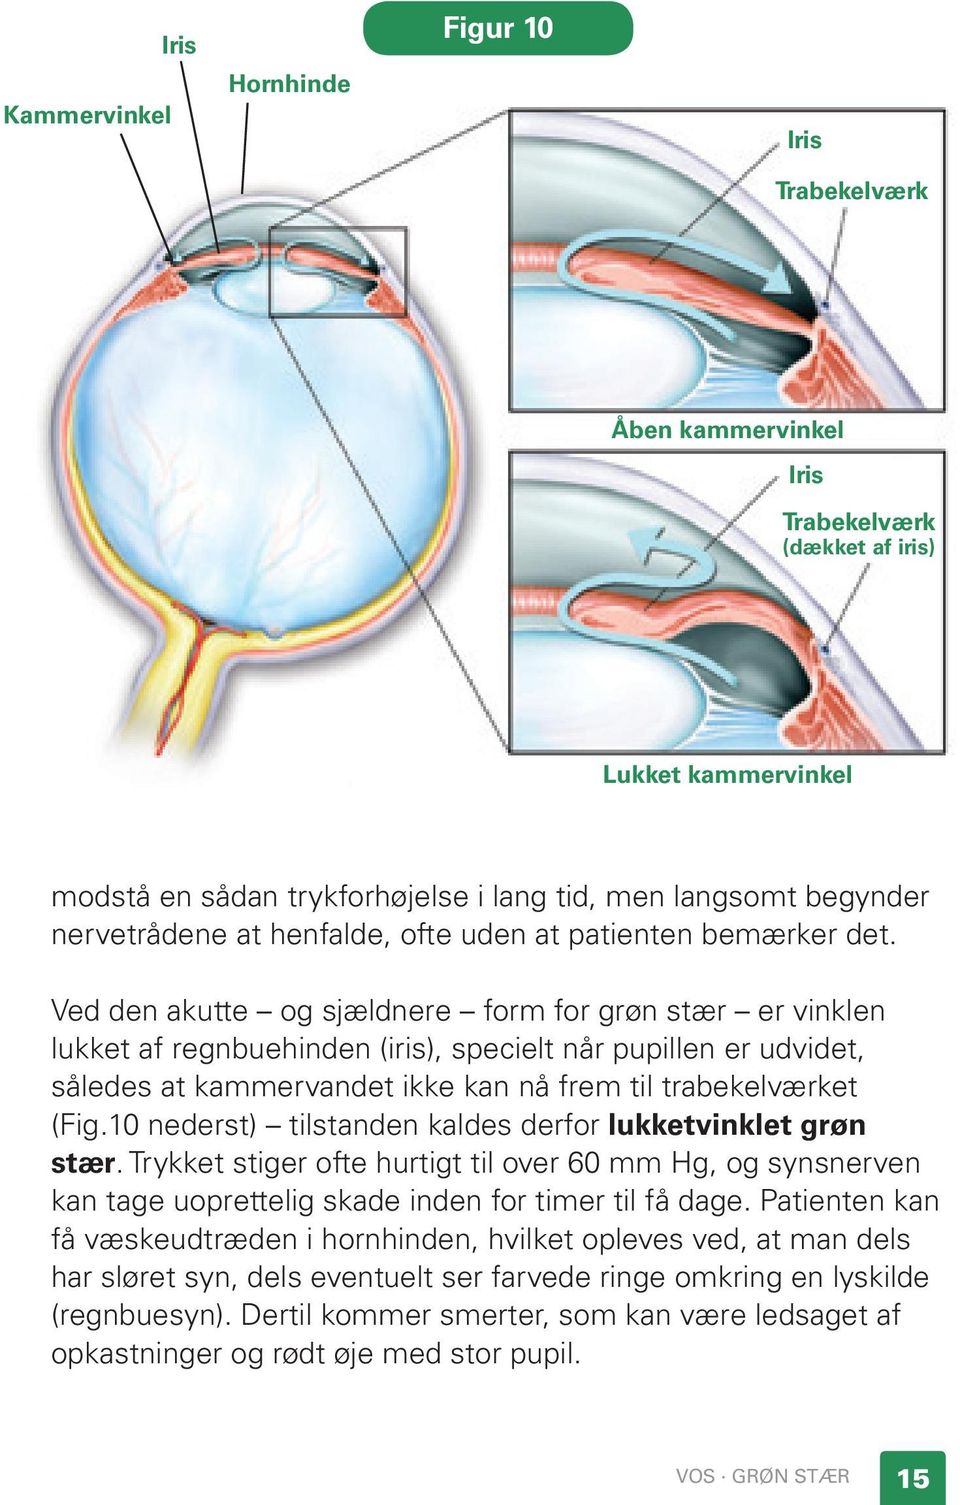 Ved den akutte og sjældnere form for grøn stær er vinklen lukket af regnbuehinden (iris), specielt når pupillen er udvidet, således at kammervandet ikke kan nå frem til trabekelværket (Fig.